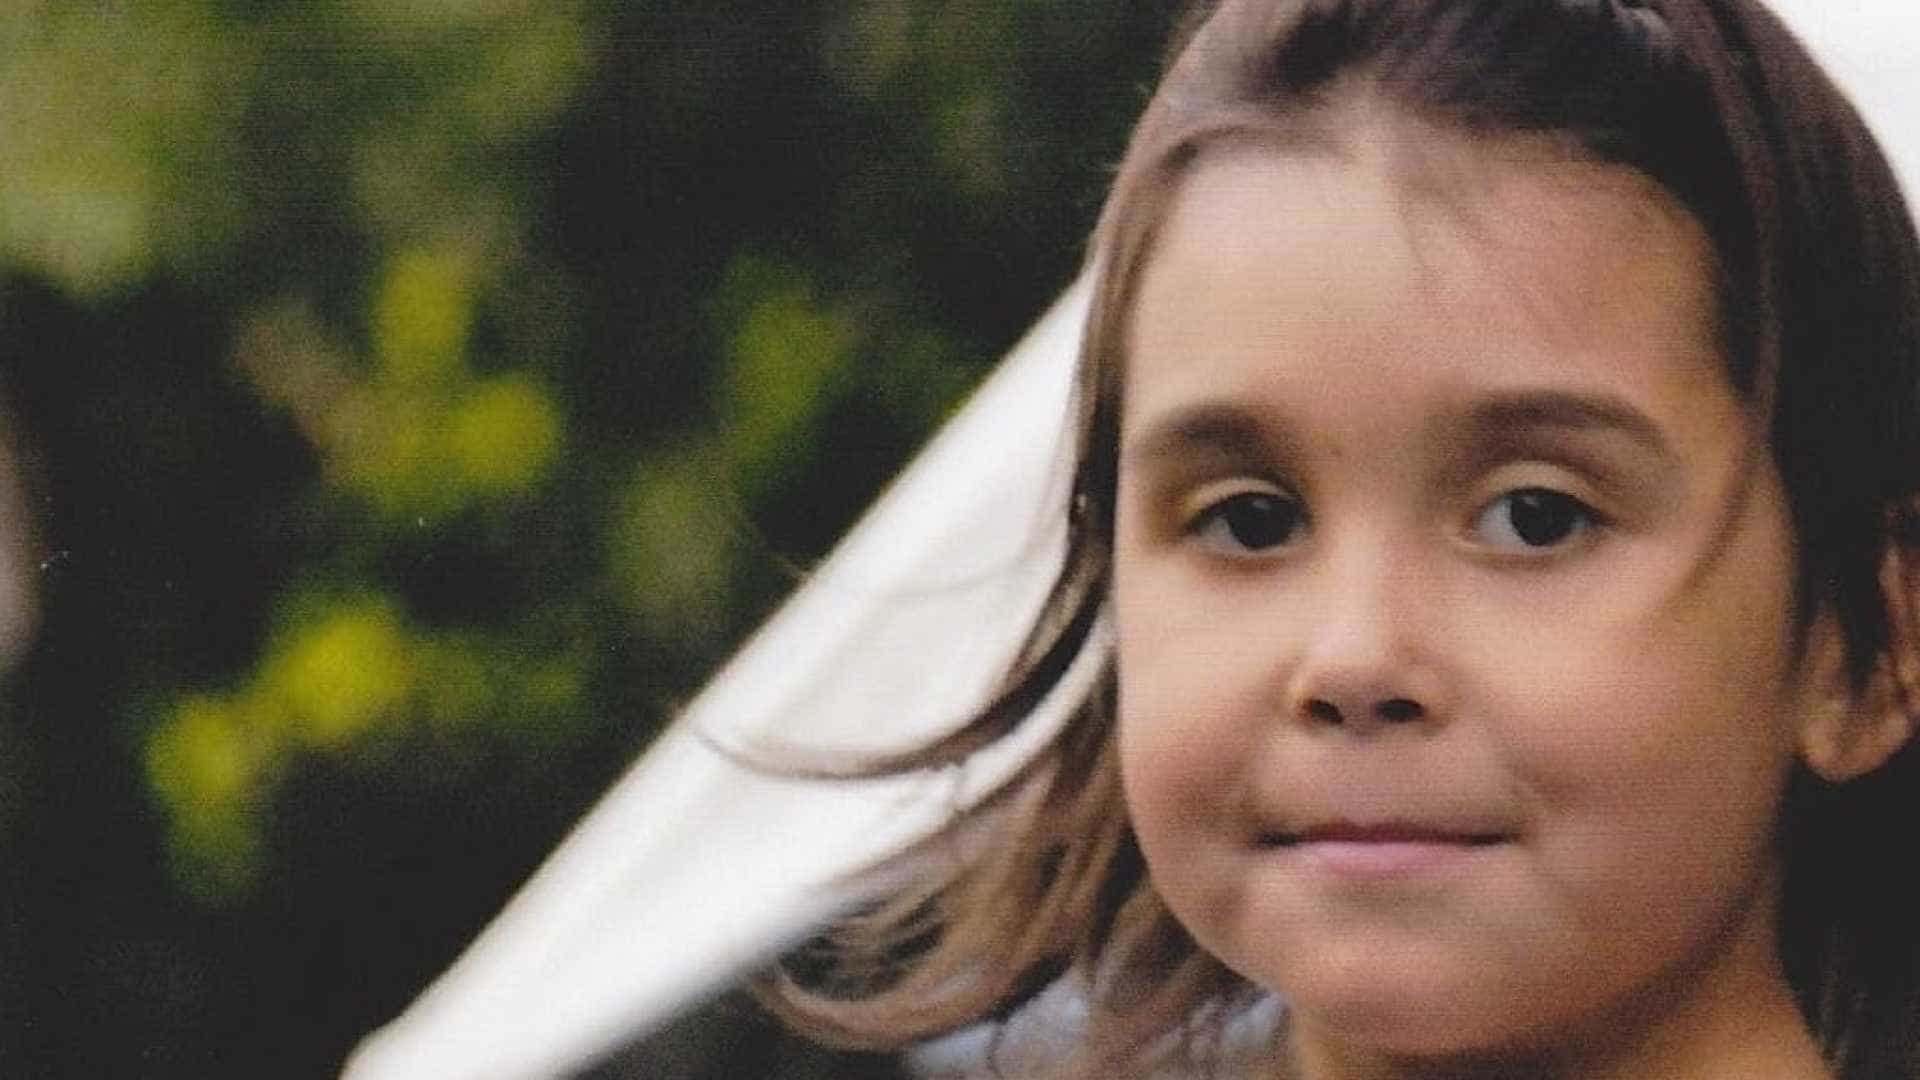 PolÃ­cia australiana encontra menina desaparecida hÃ¡ quatro anos